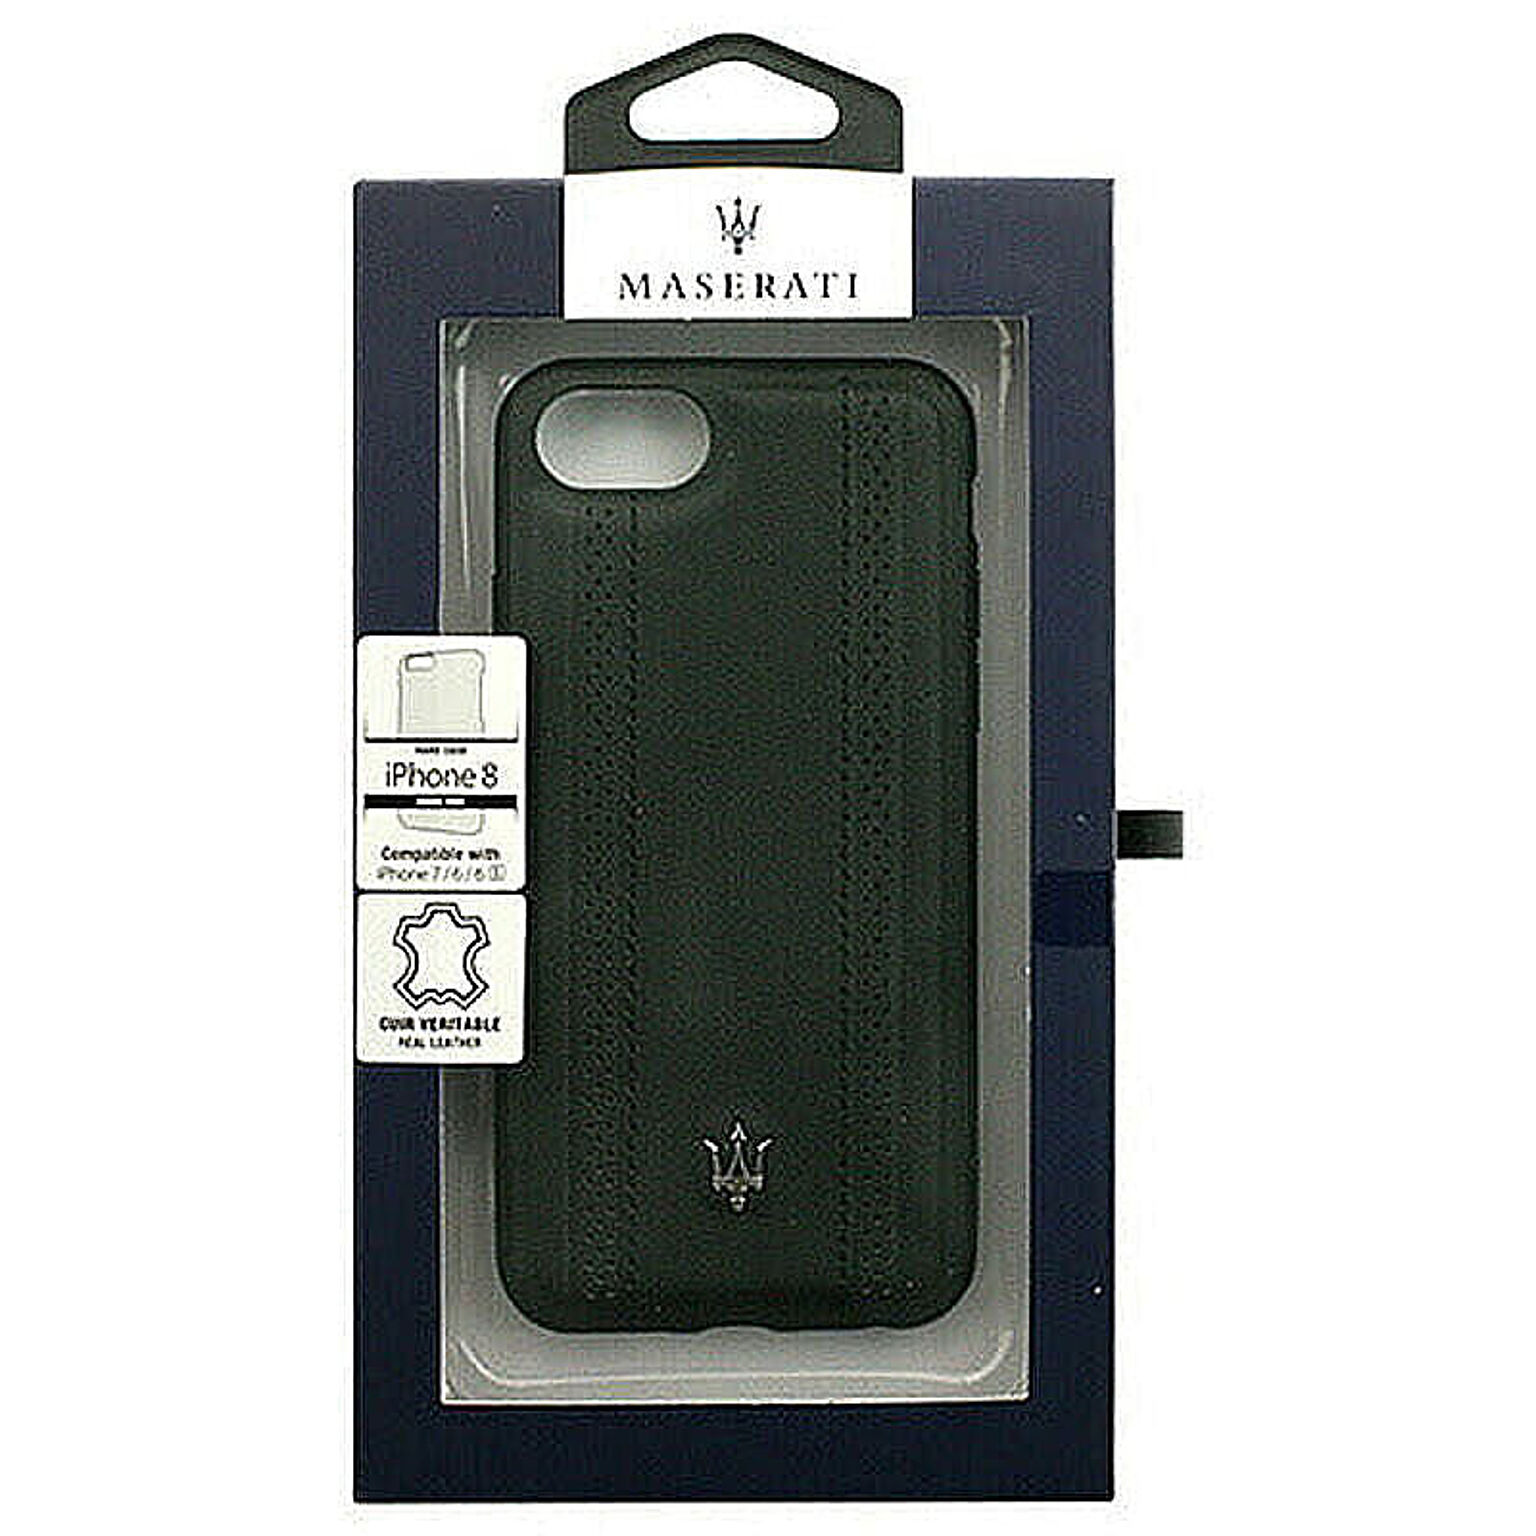 MASERATI 公式ライセンス品 iPhone8/7/6s/6専用 本革バックカバー MAGPEHCI8BK 管理No. 4526397968458